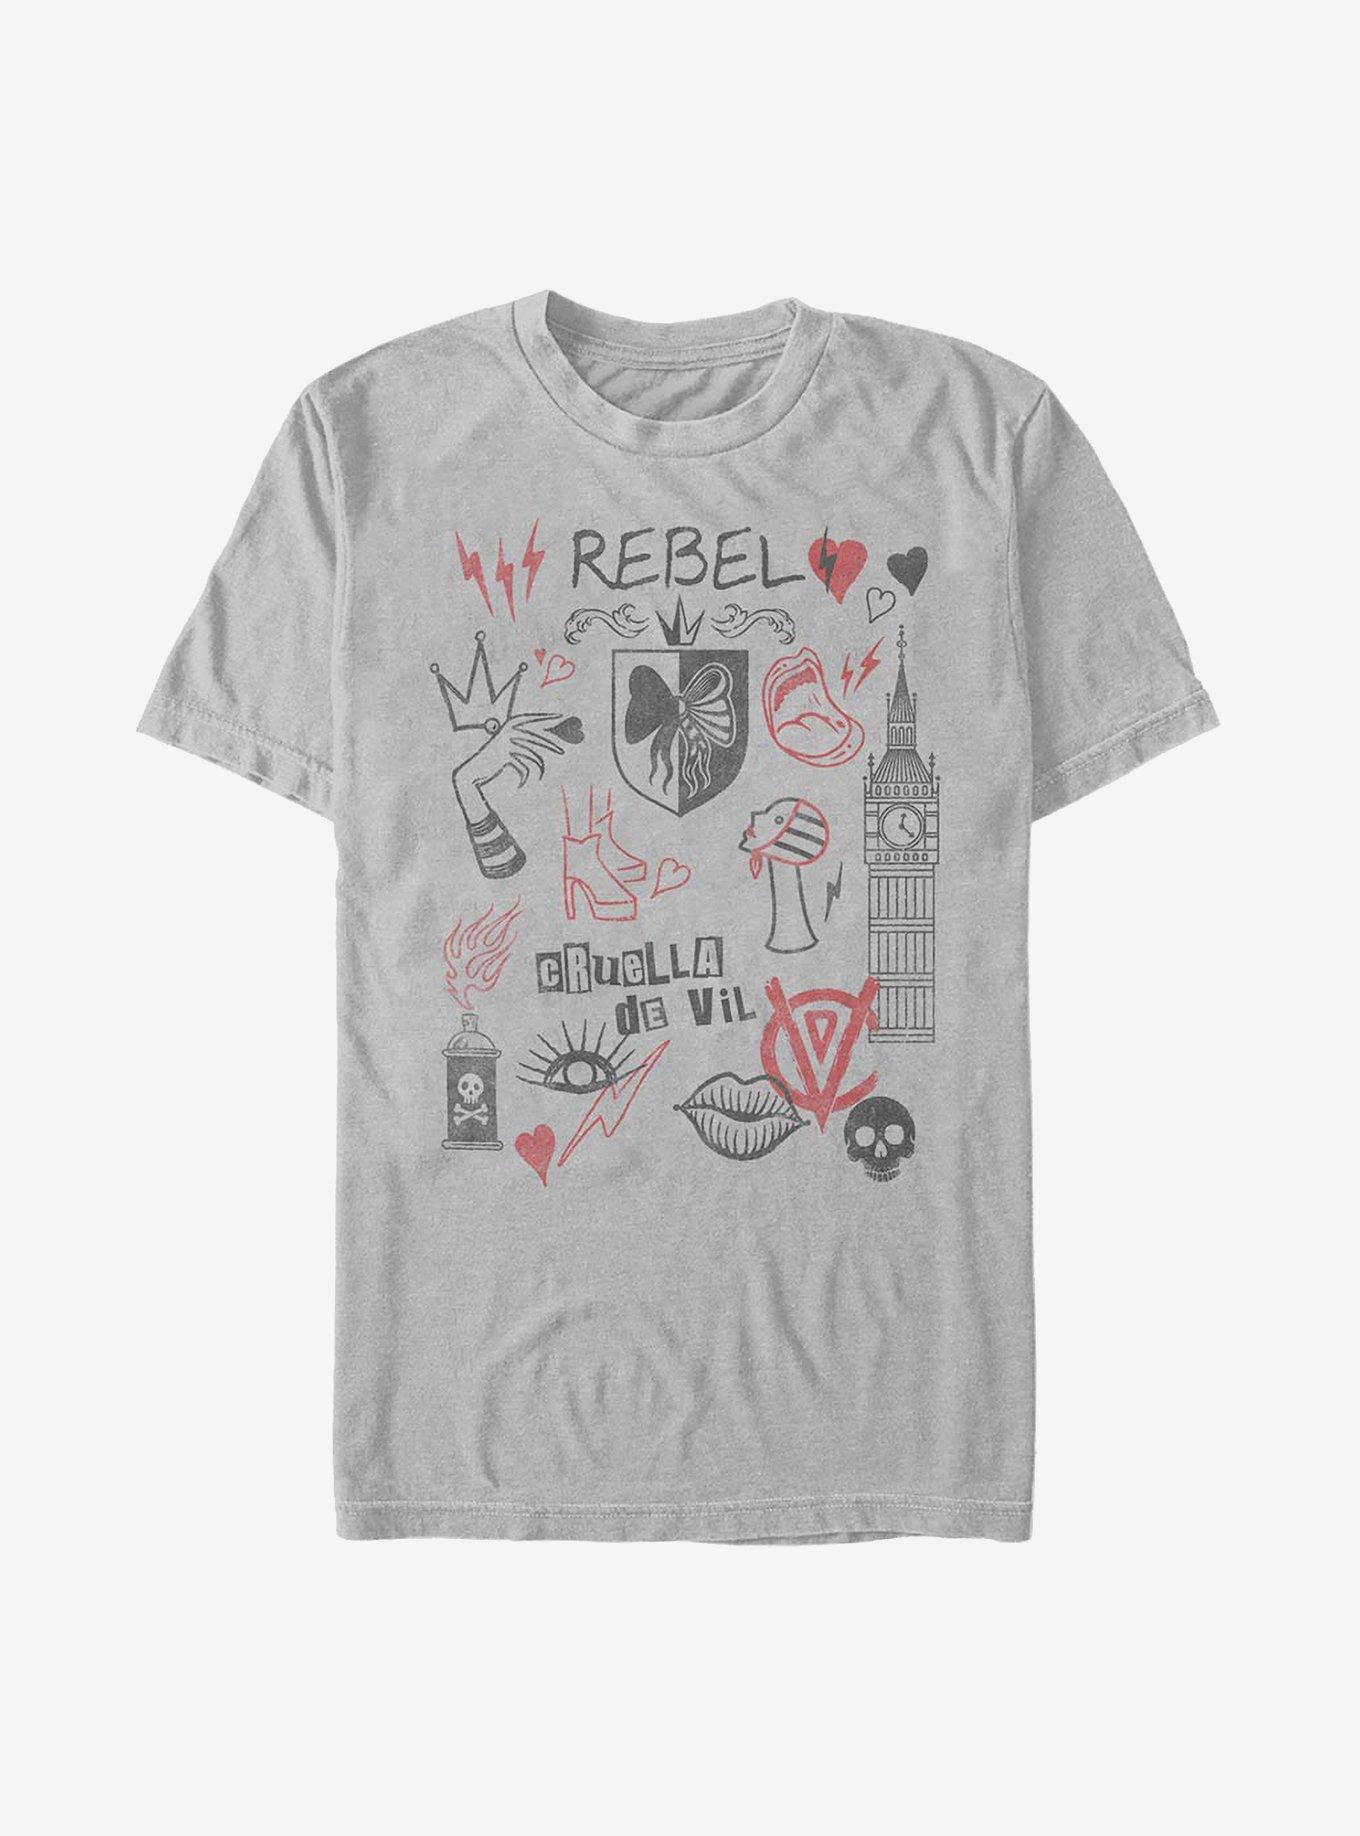 Disney Cruella Rebel Queen Doodles T-Shirt, SILVER, hi-res